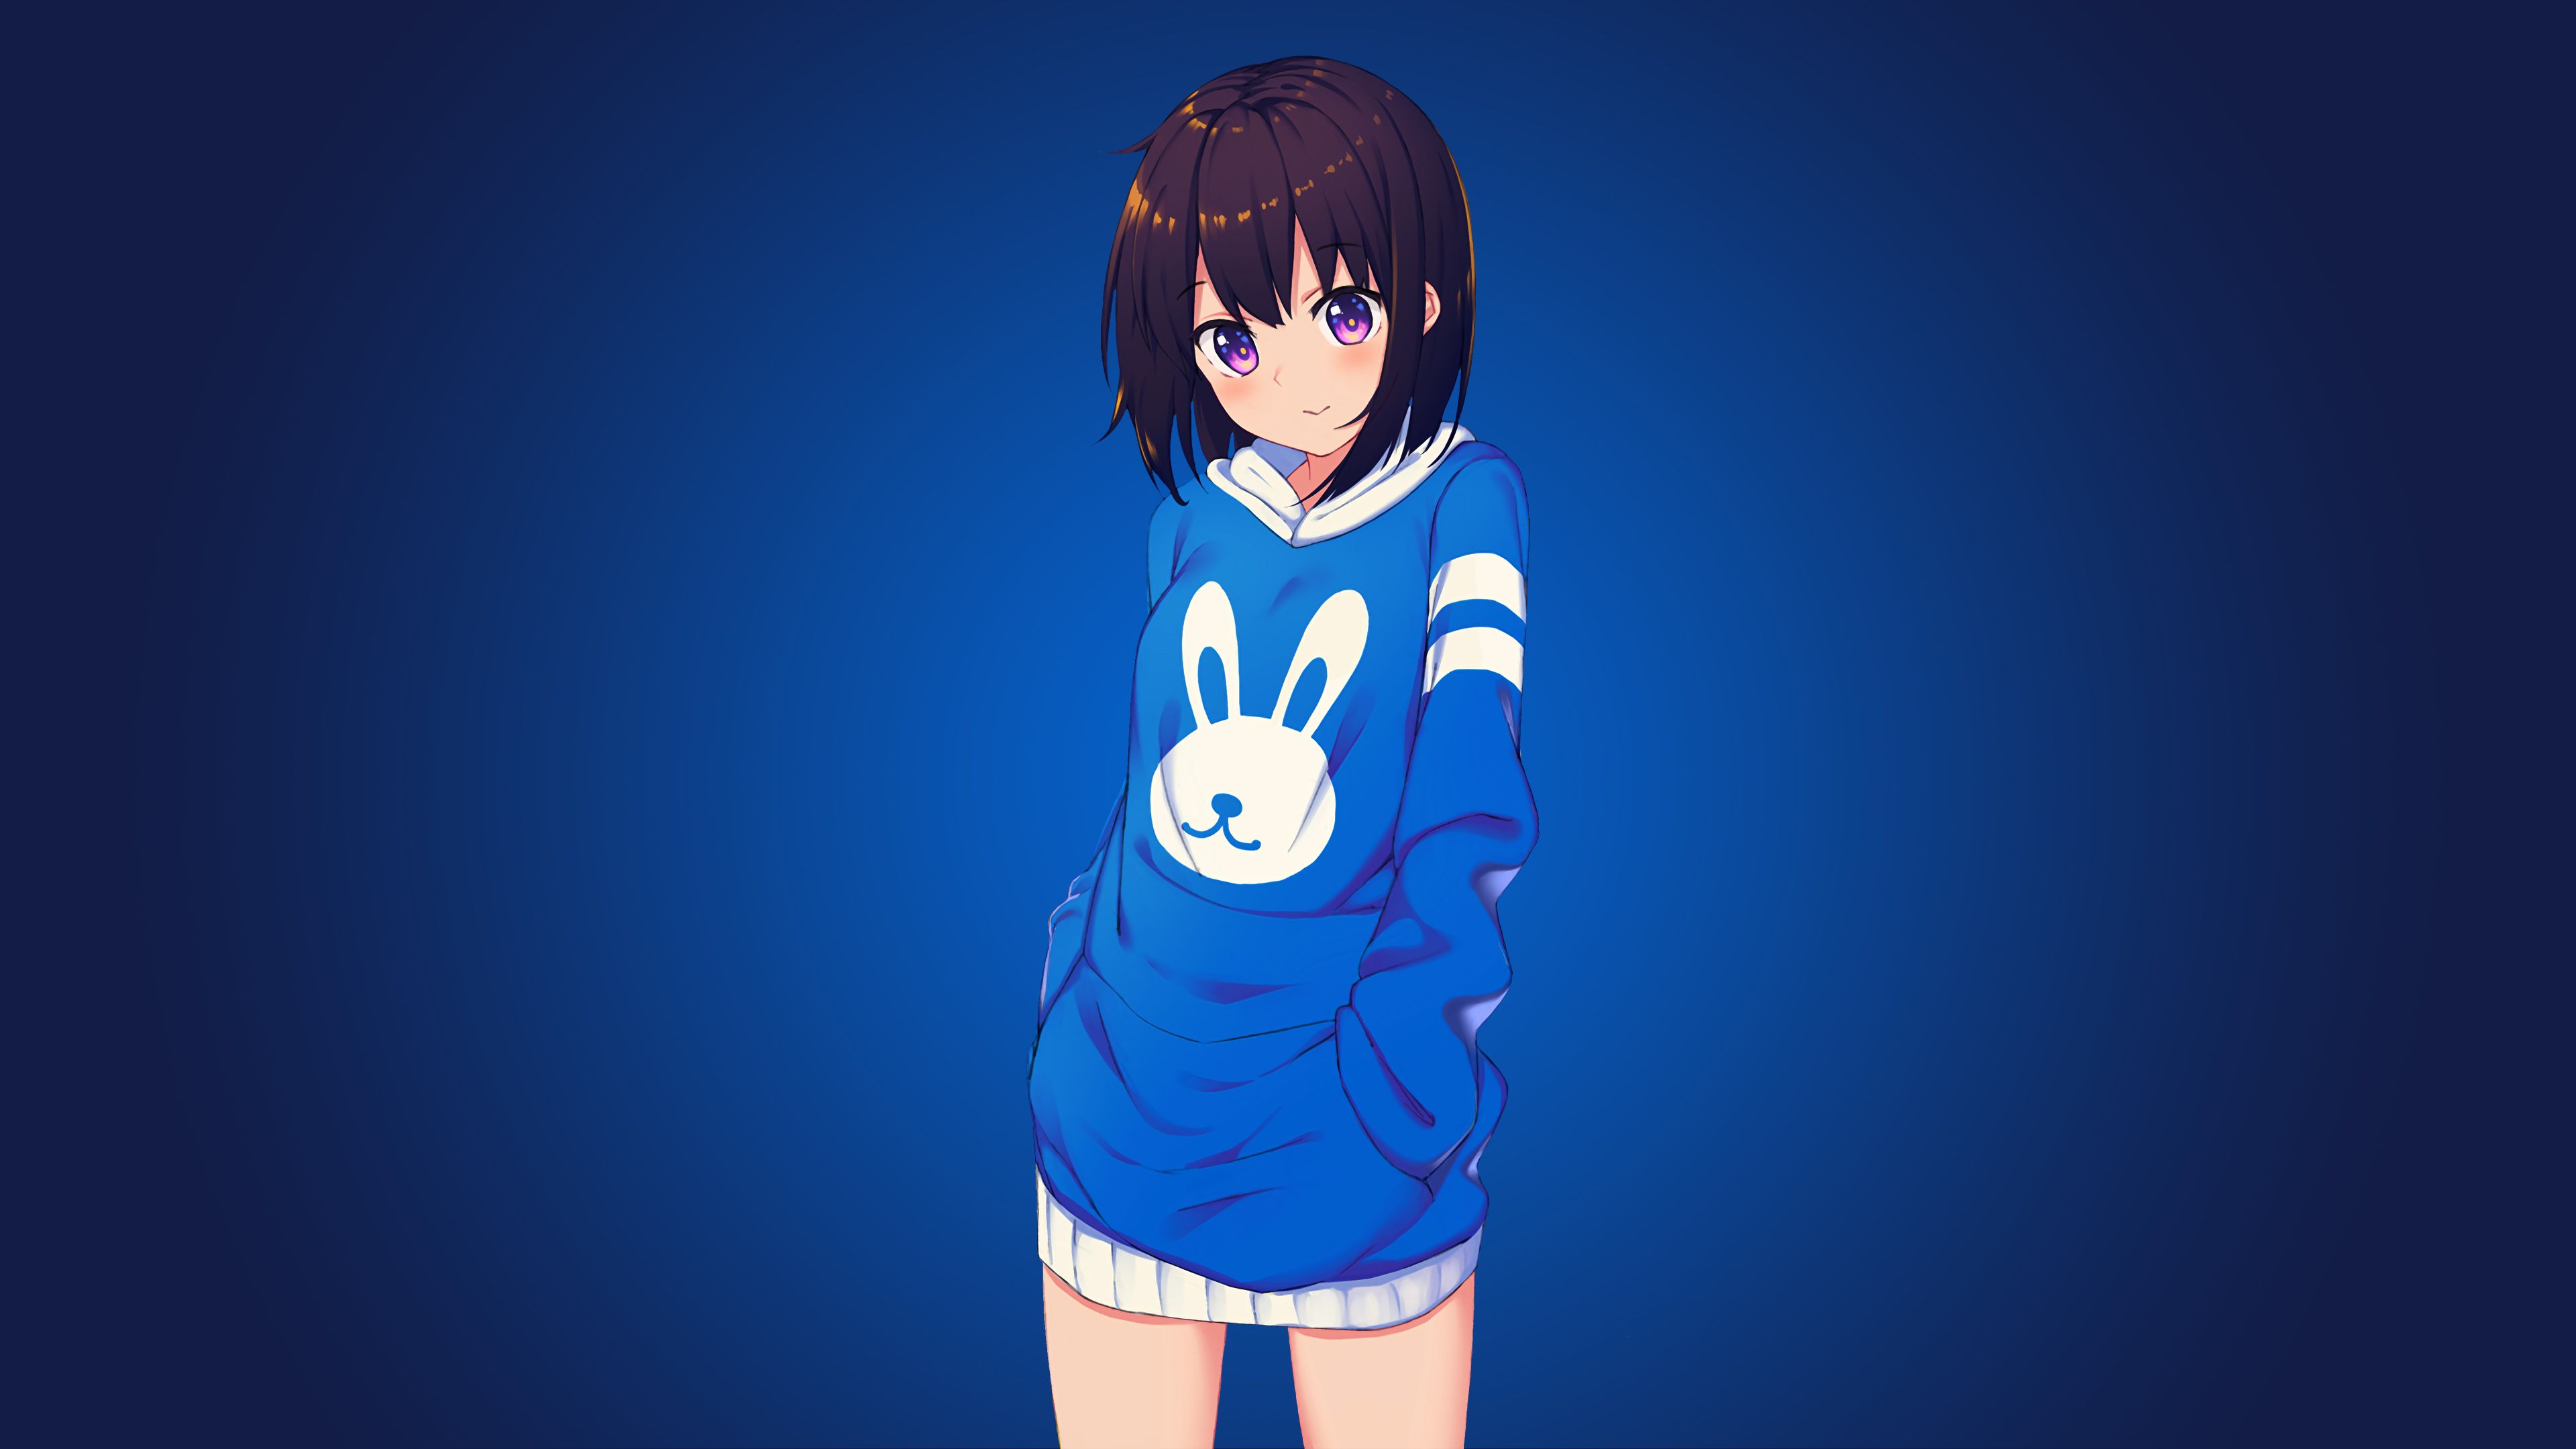 Wallpaper 4k Blue Bunny Girl Anime 4k 4k Wallpaper, Anime Girl